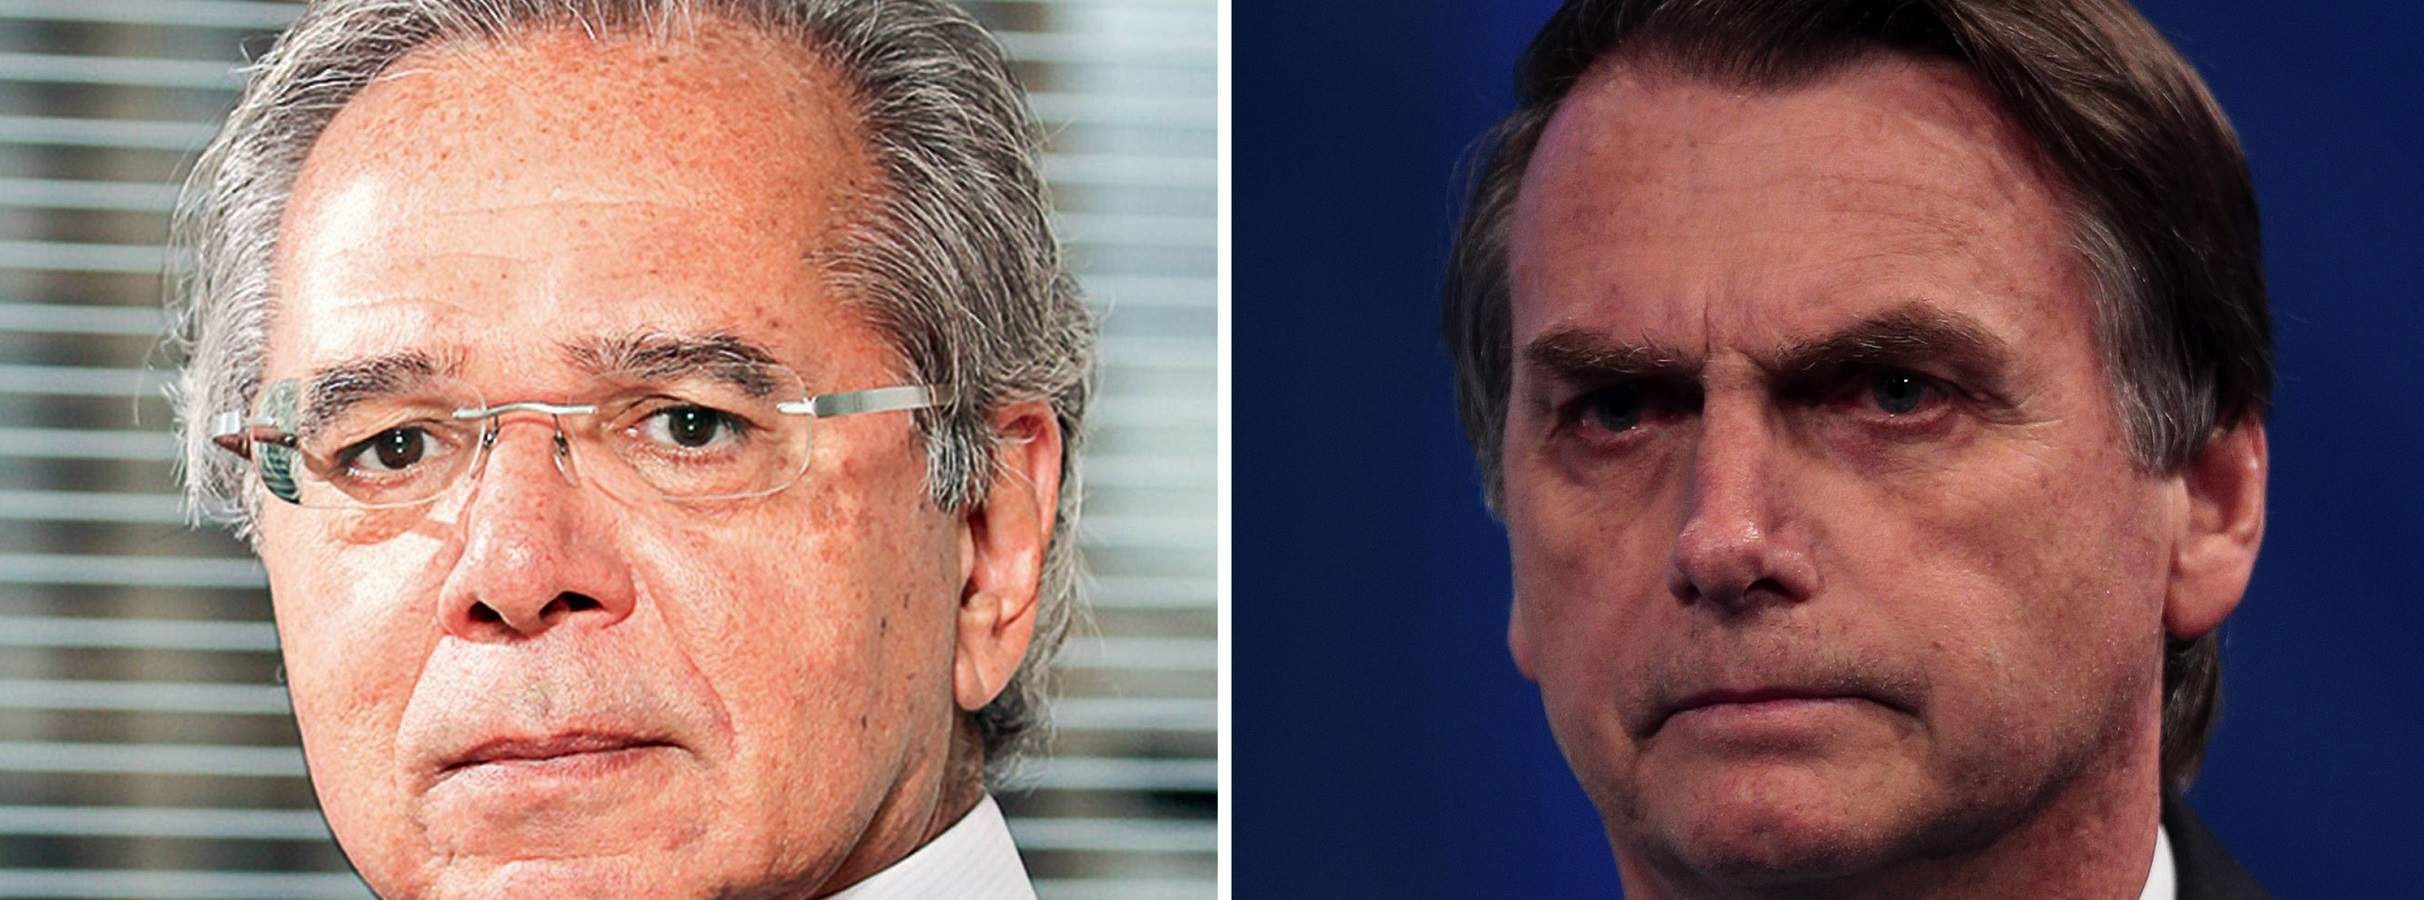 O que esperar da economia brasileira com Bolsonaro e Paulo Guedes?